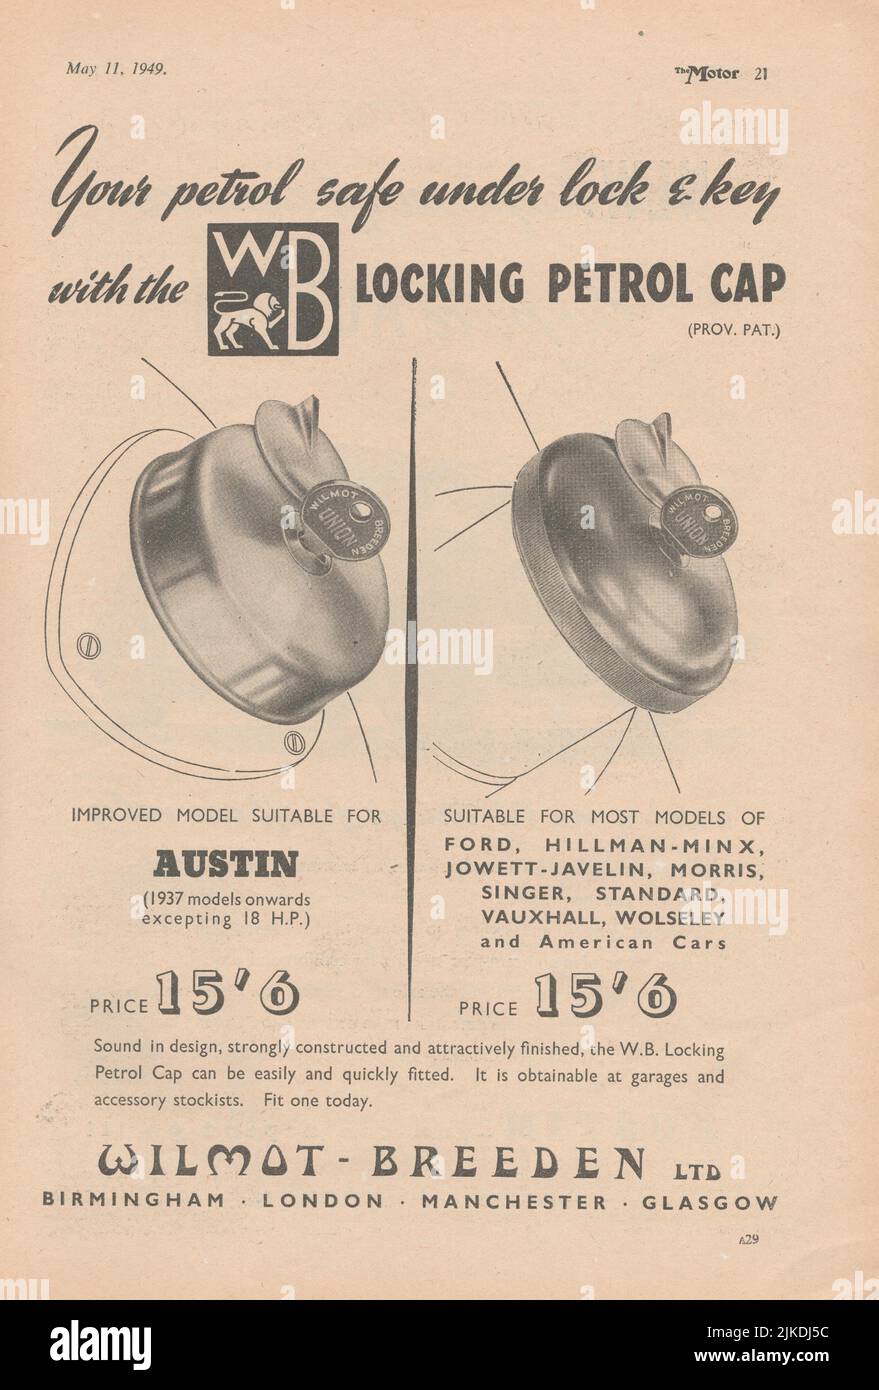 Wilmot-Breeden Ltd tappare la benzina vecchia pubblicità vintage da una rivista di auto del Regno Unito Foto Stock